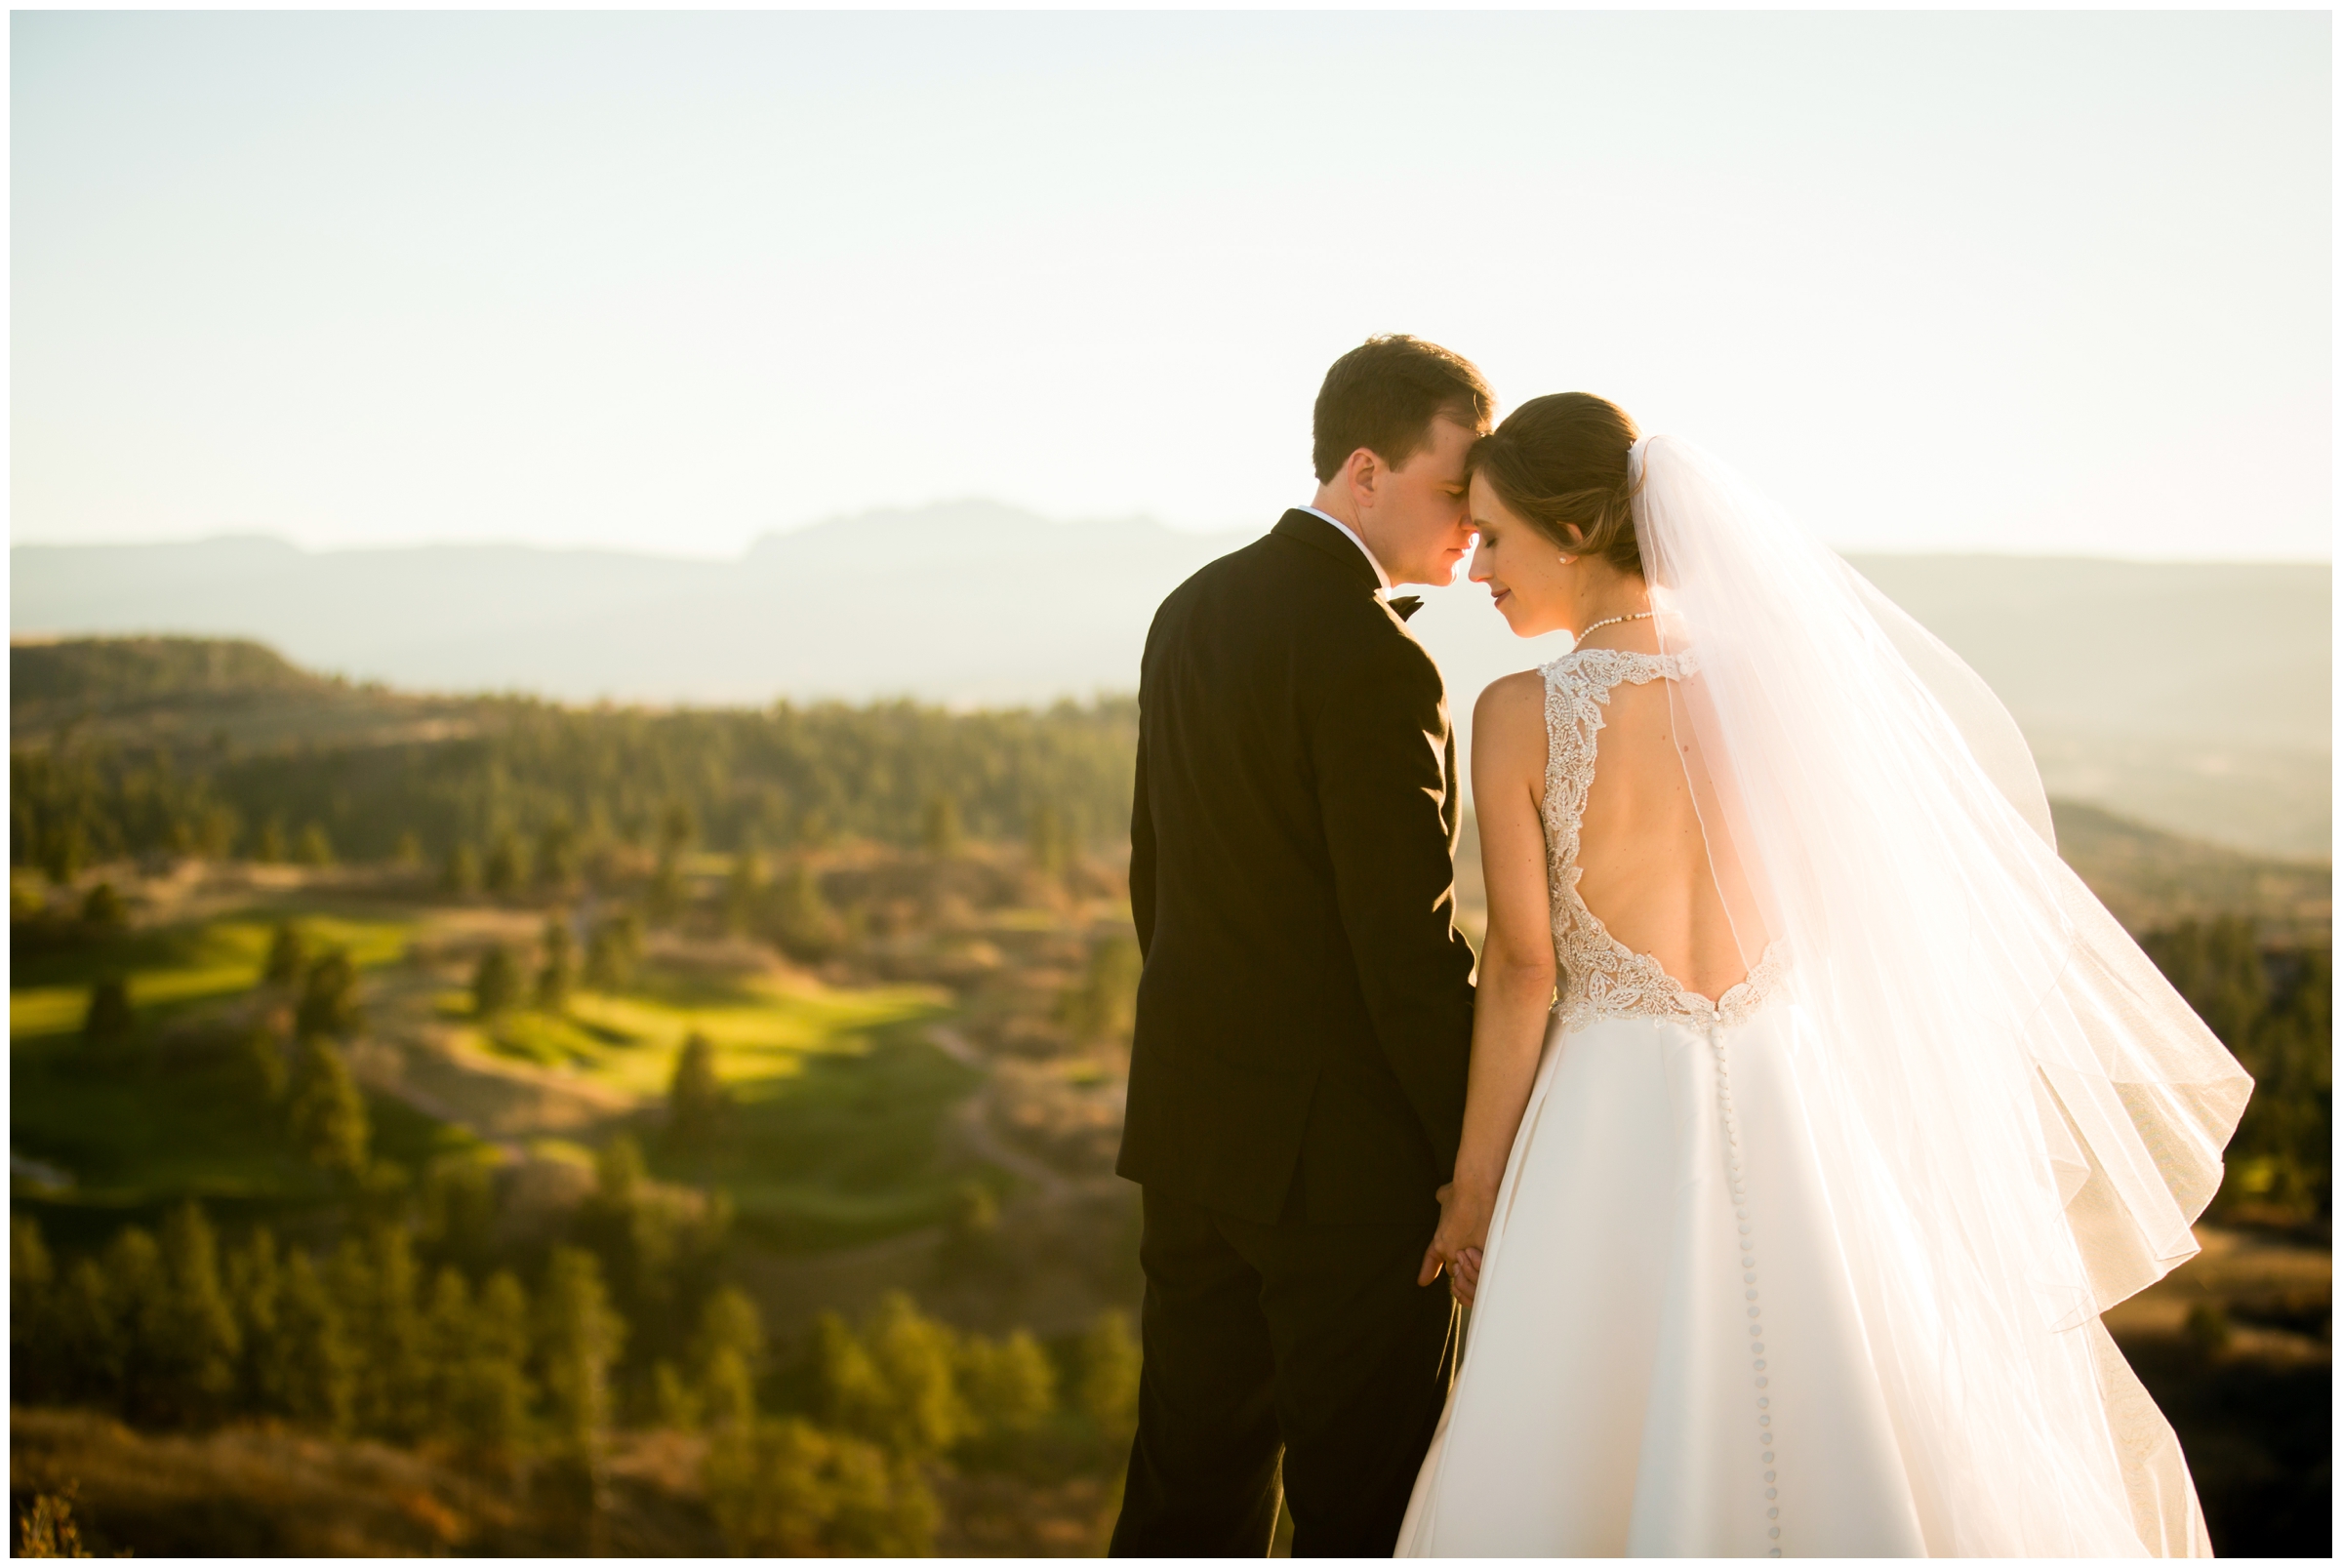 Sedalia Colorado mountain wedding photography inspiration 